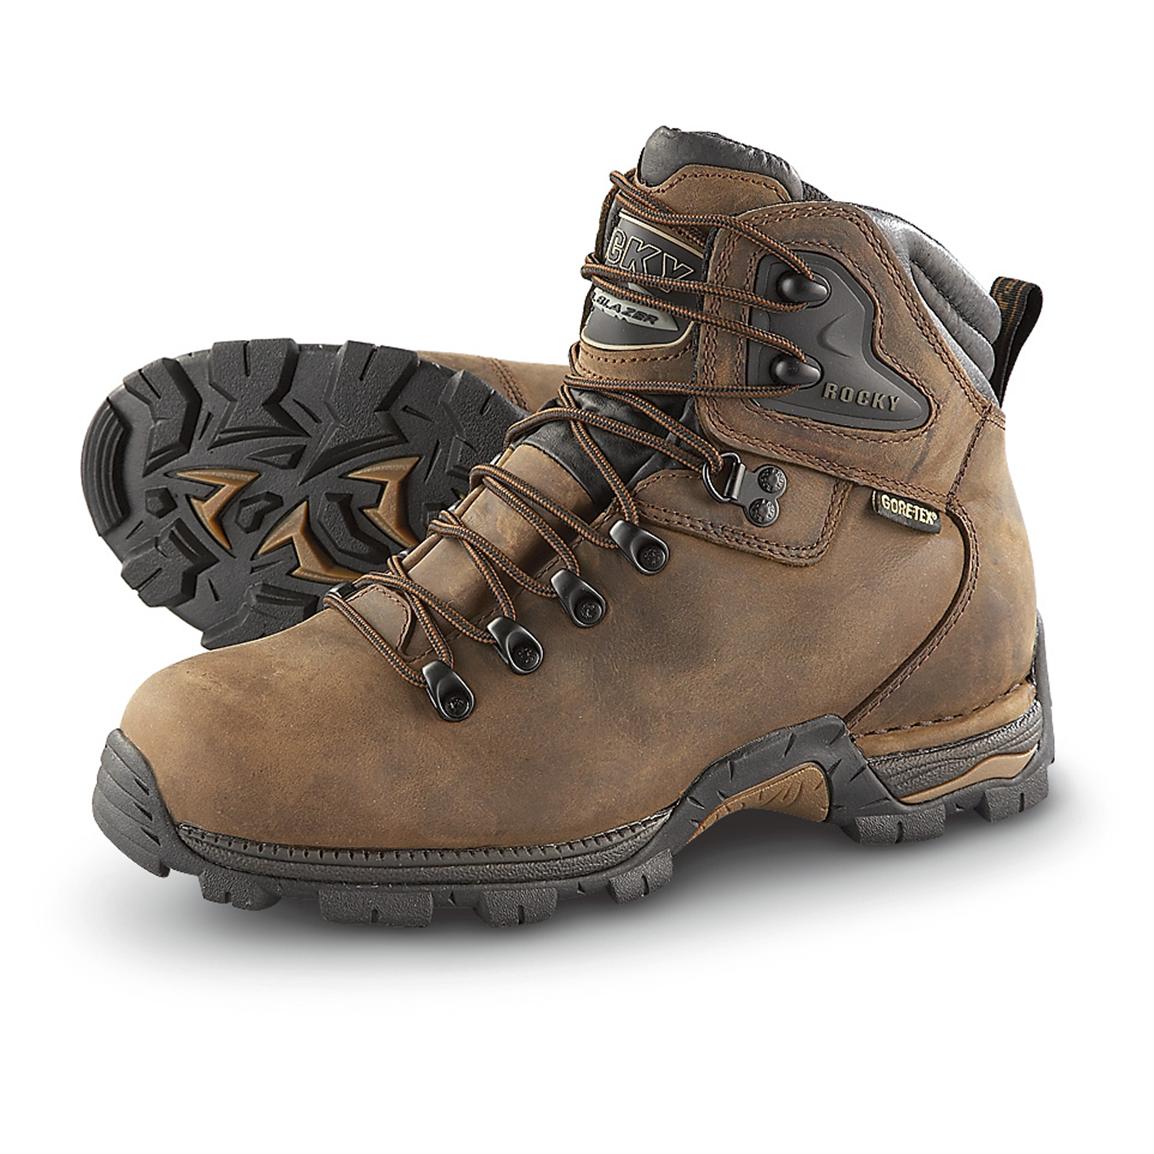 Men's Rocky® GORE - TEX® Trailblazer Hiking Boots, Dark Brown - 170719